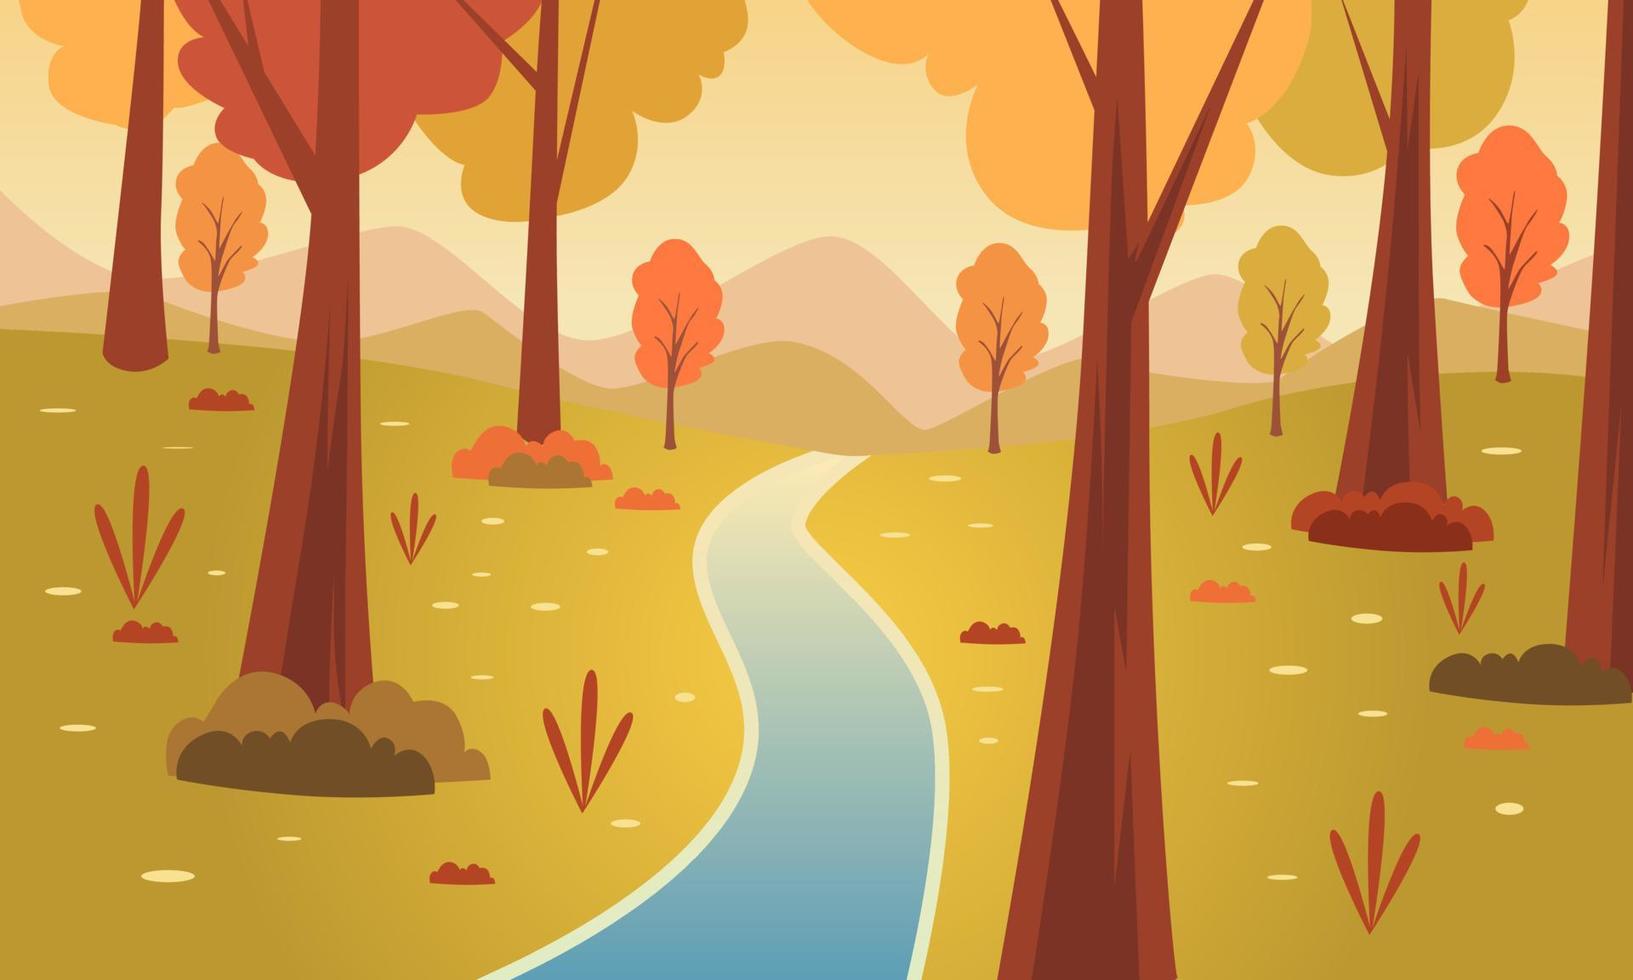 río de otoño en el bosque fondo de vector de ilustración panorámica. hojas cayendo con cielo naranja